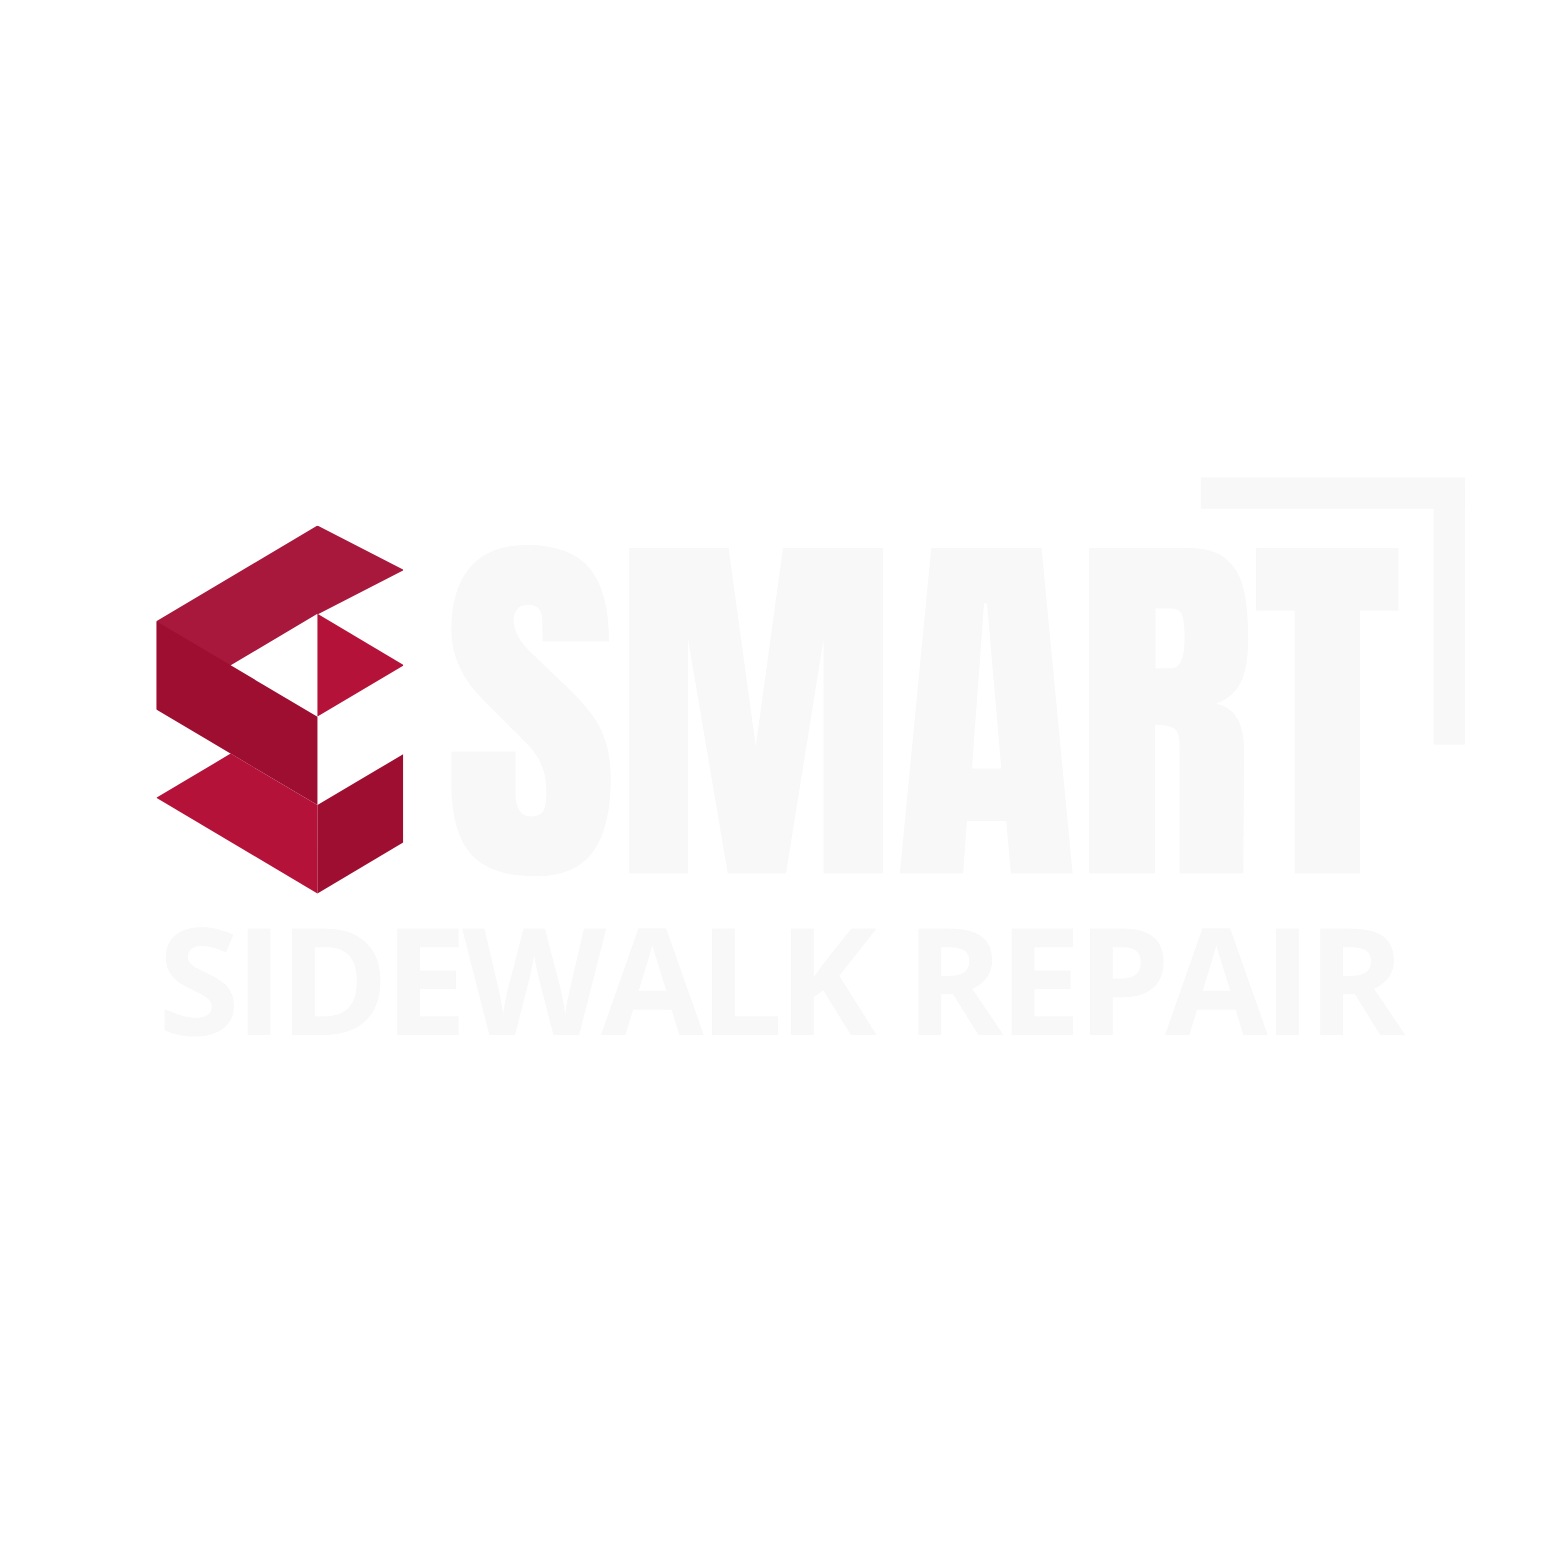 sidewalk repair Services Brooklyn